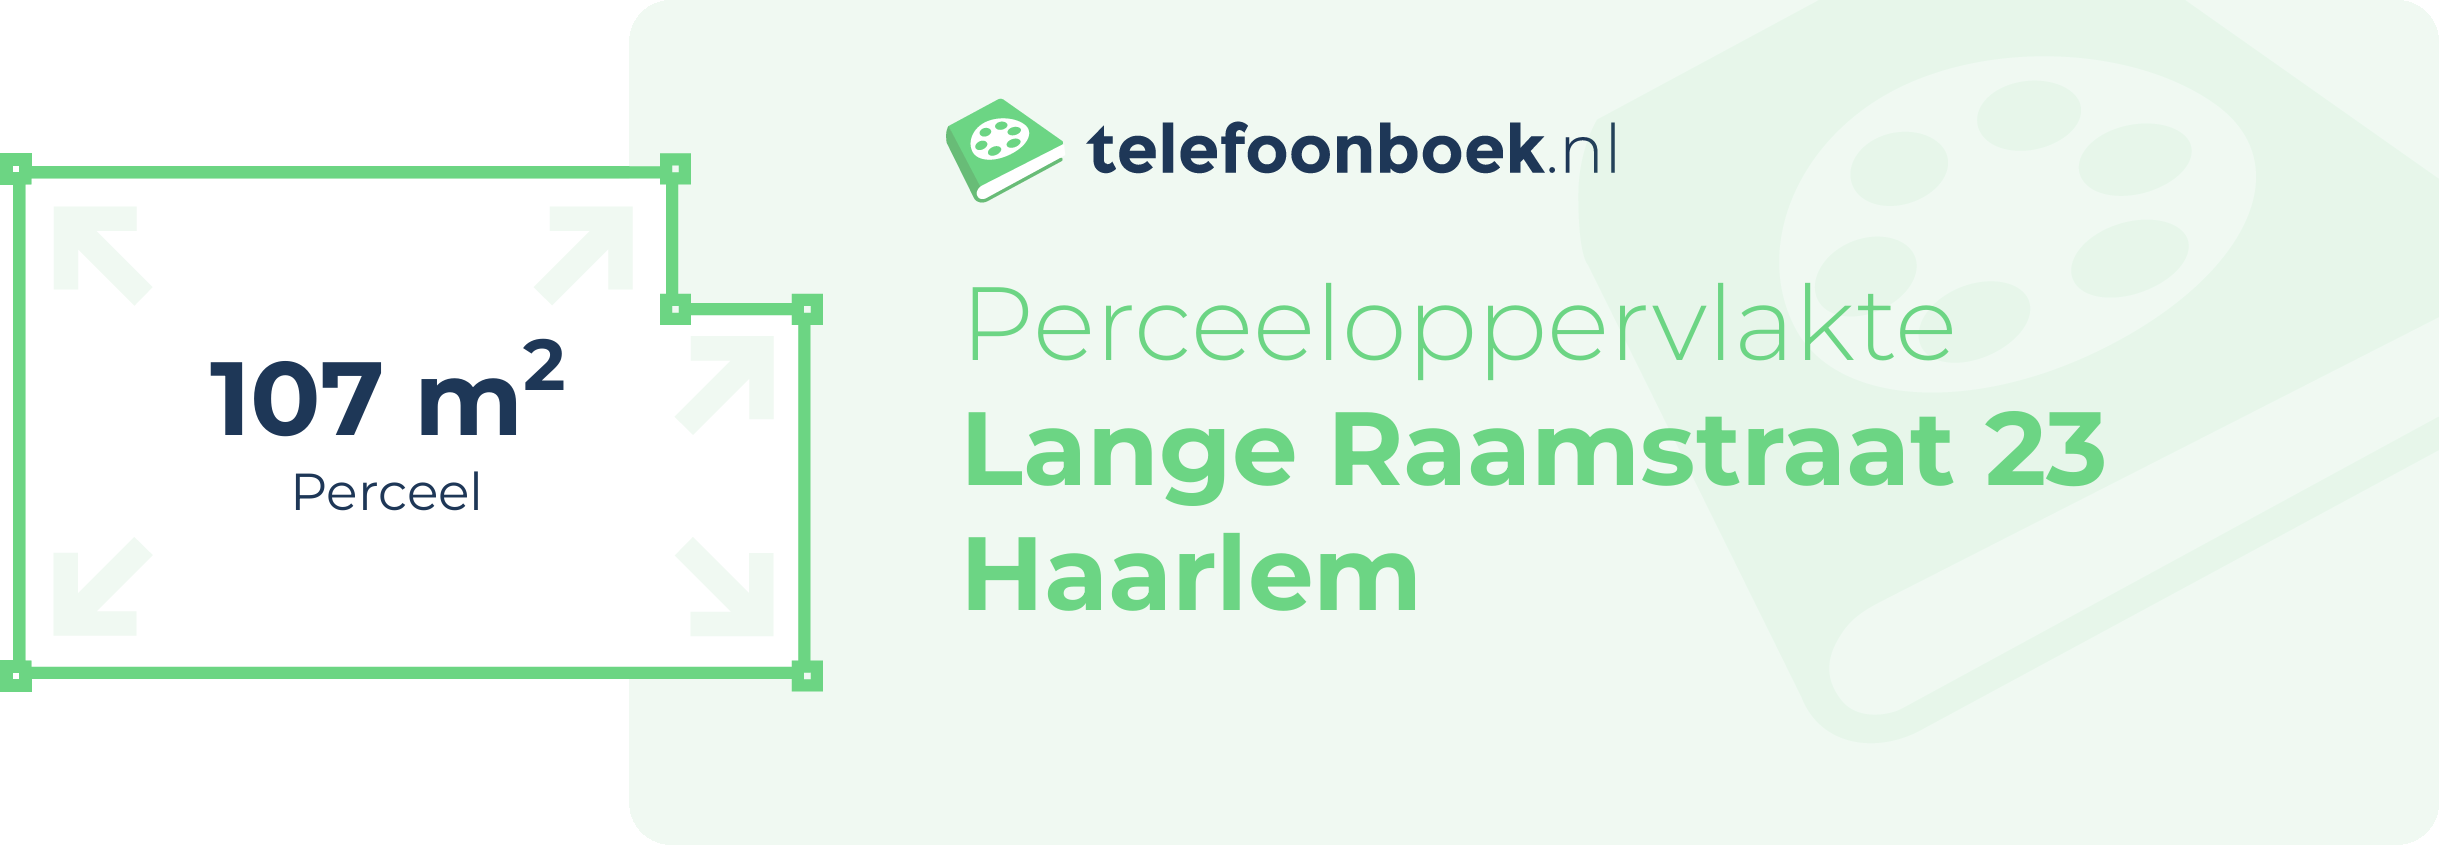 Perceeloppervlakte Lange Raamstraat 23 Haarlem